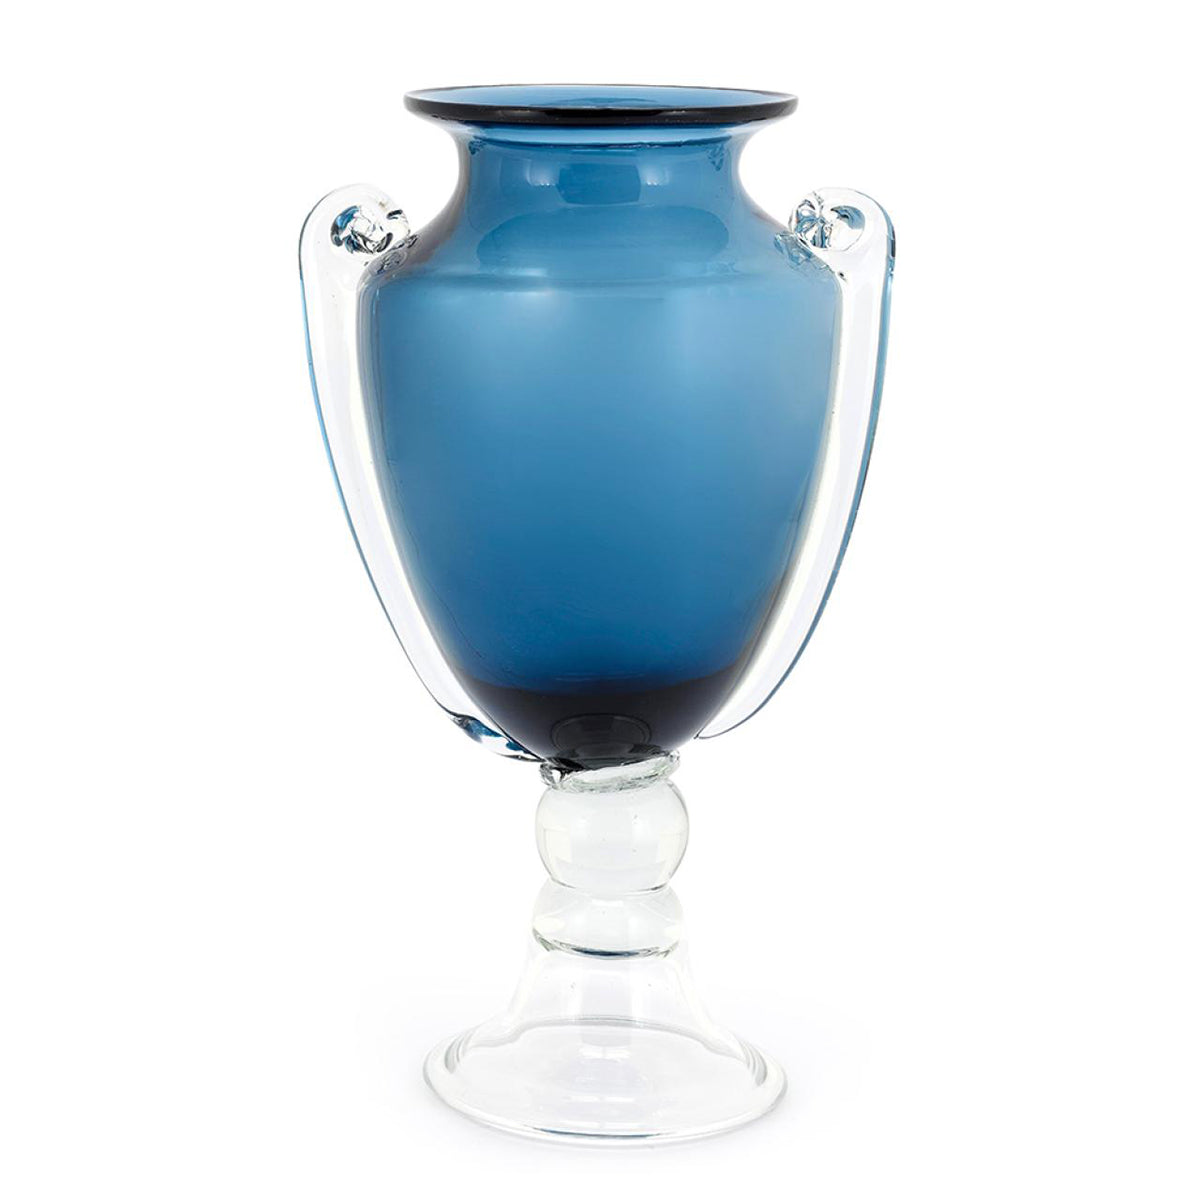 KONRAD INTERIOR SELECTION - Vase "Roman" Blue